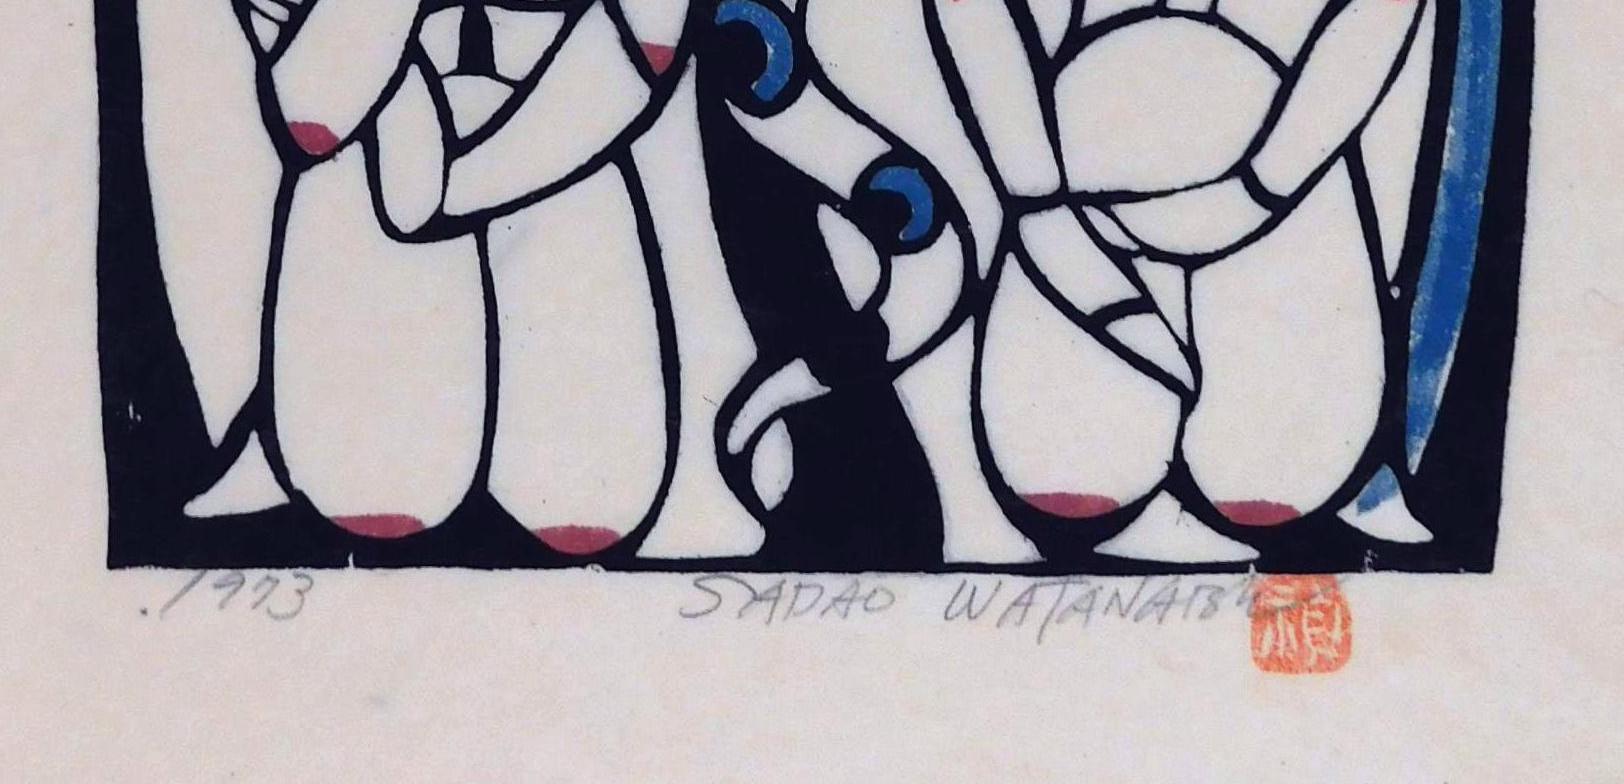 Paper Sadao Watanabe Original Stencil Print, 1973 - Adam and Eve For Sale